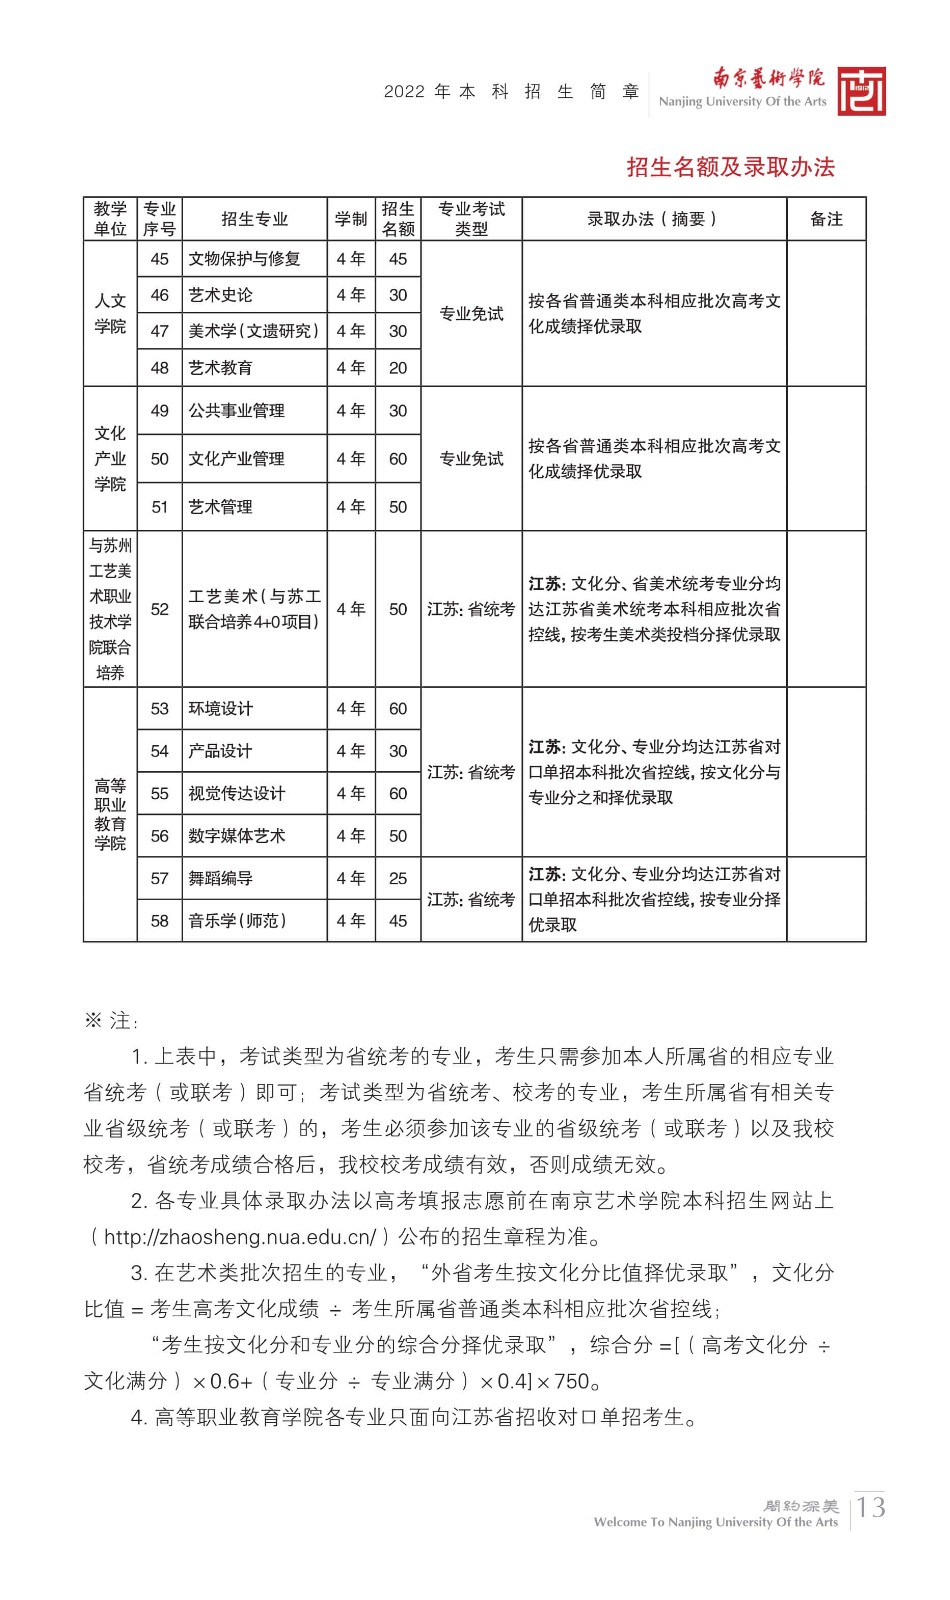 2022年南京艺术学院本科舞蹈类、音乐类招生简章、校考报名及考试相关安排、联系方式及声明